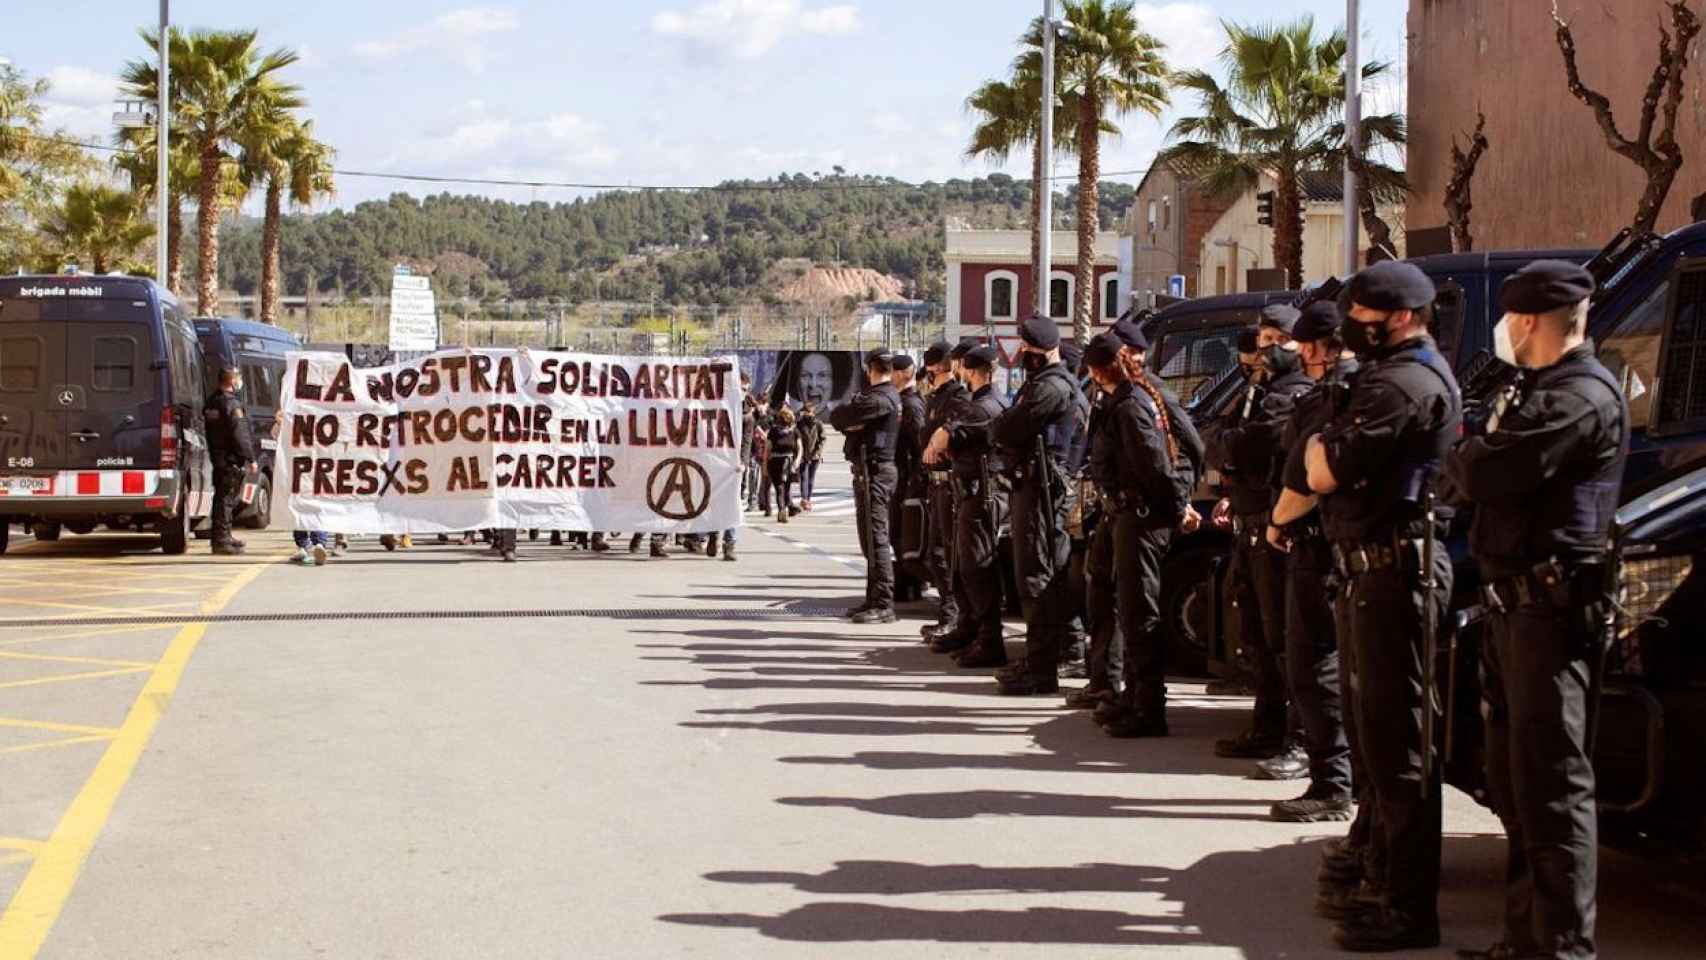 Marcha solidaria a la cárcel de Brians 1 como protesta contra la detención de los anarquistas presos / EFE - MARTA PÉREZ